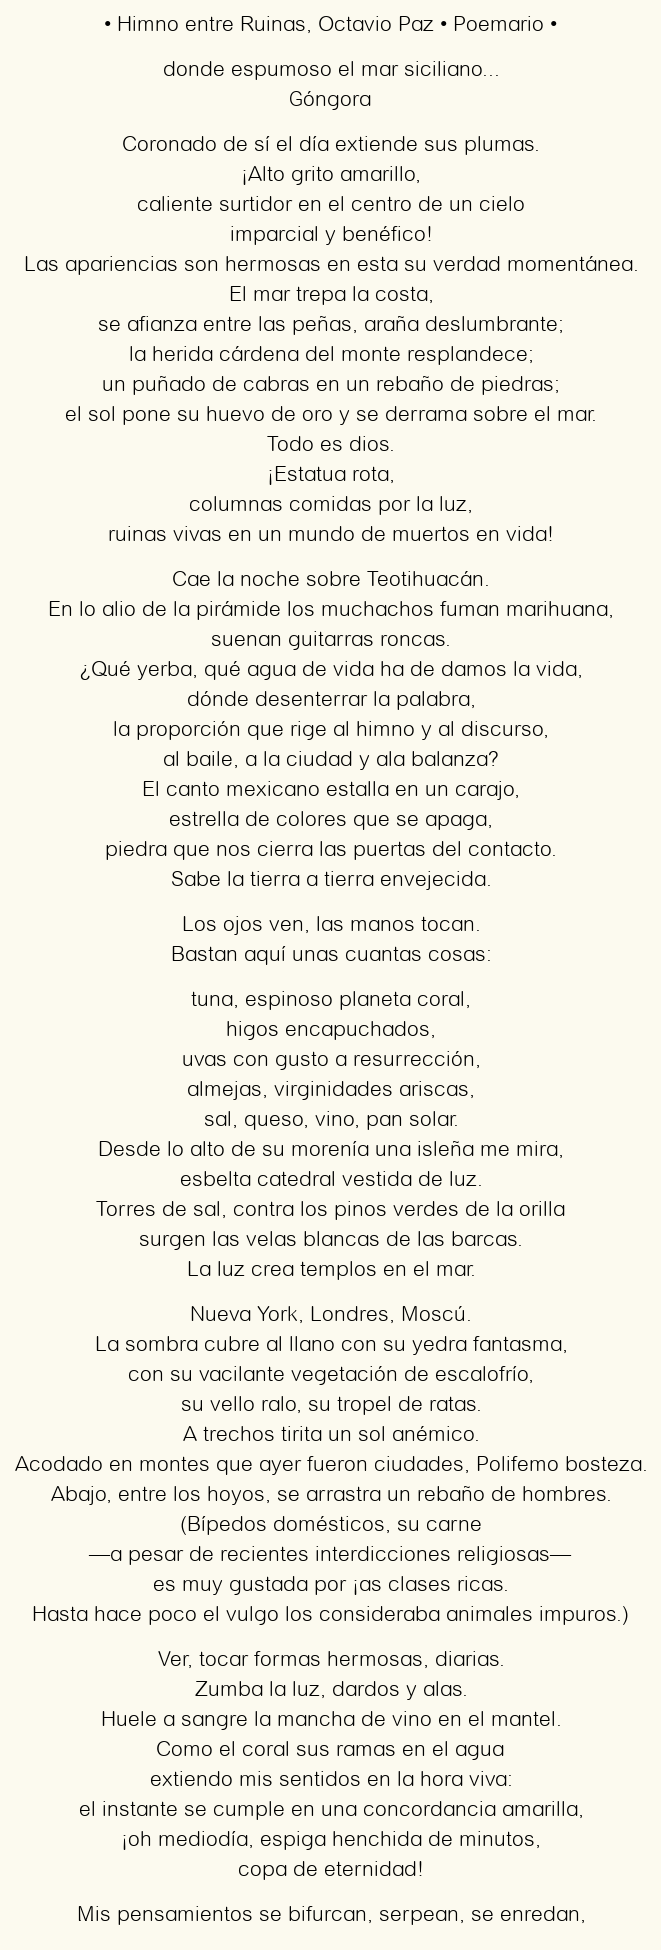 Imagen con el poema Himno entre Ruinas, por Octavio Paz